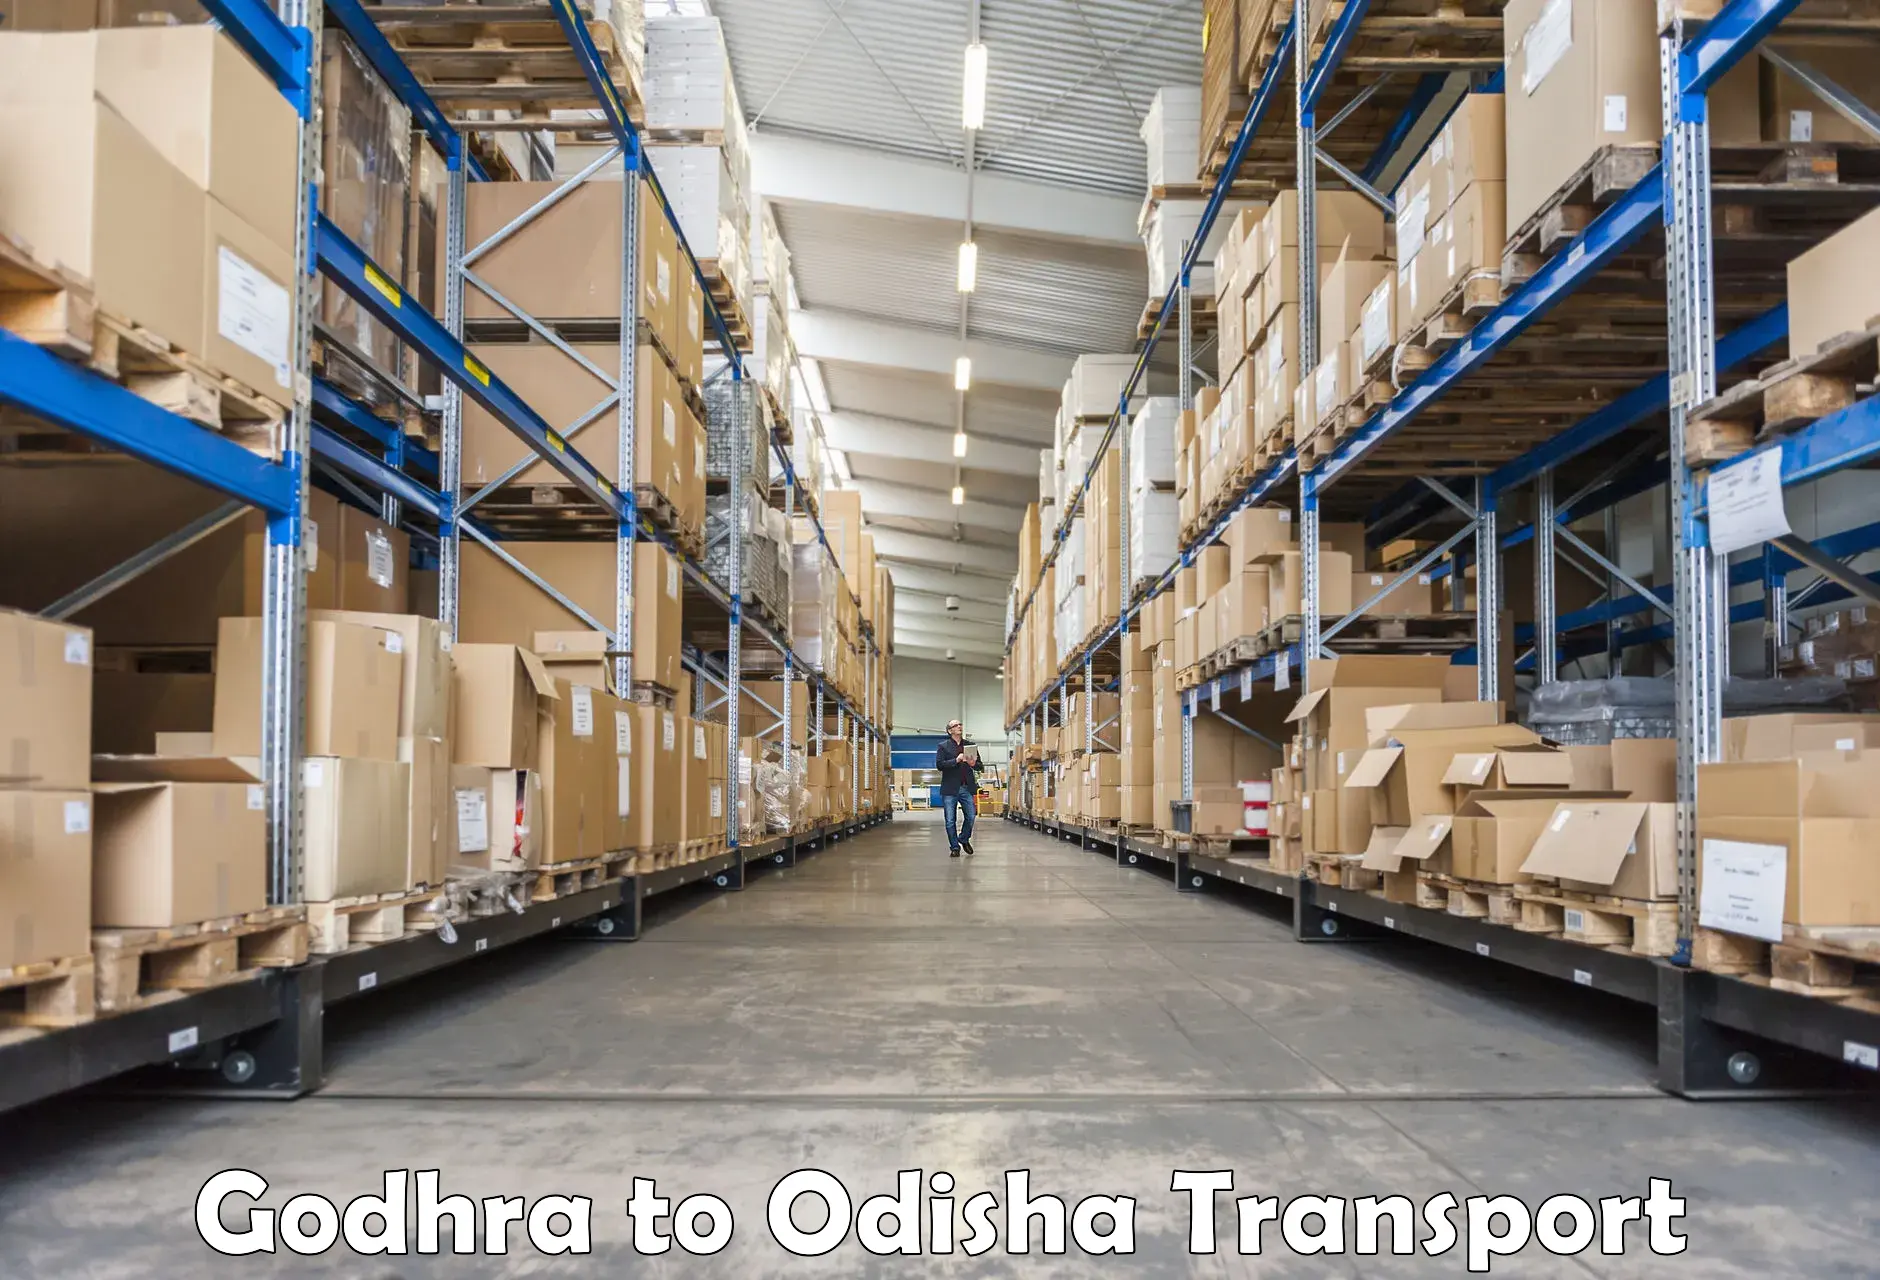 Bike transport service Godhra to Odisha